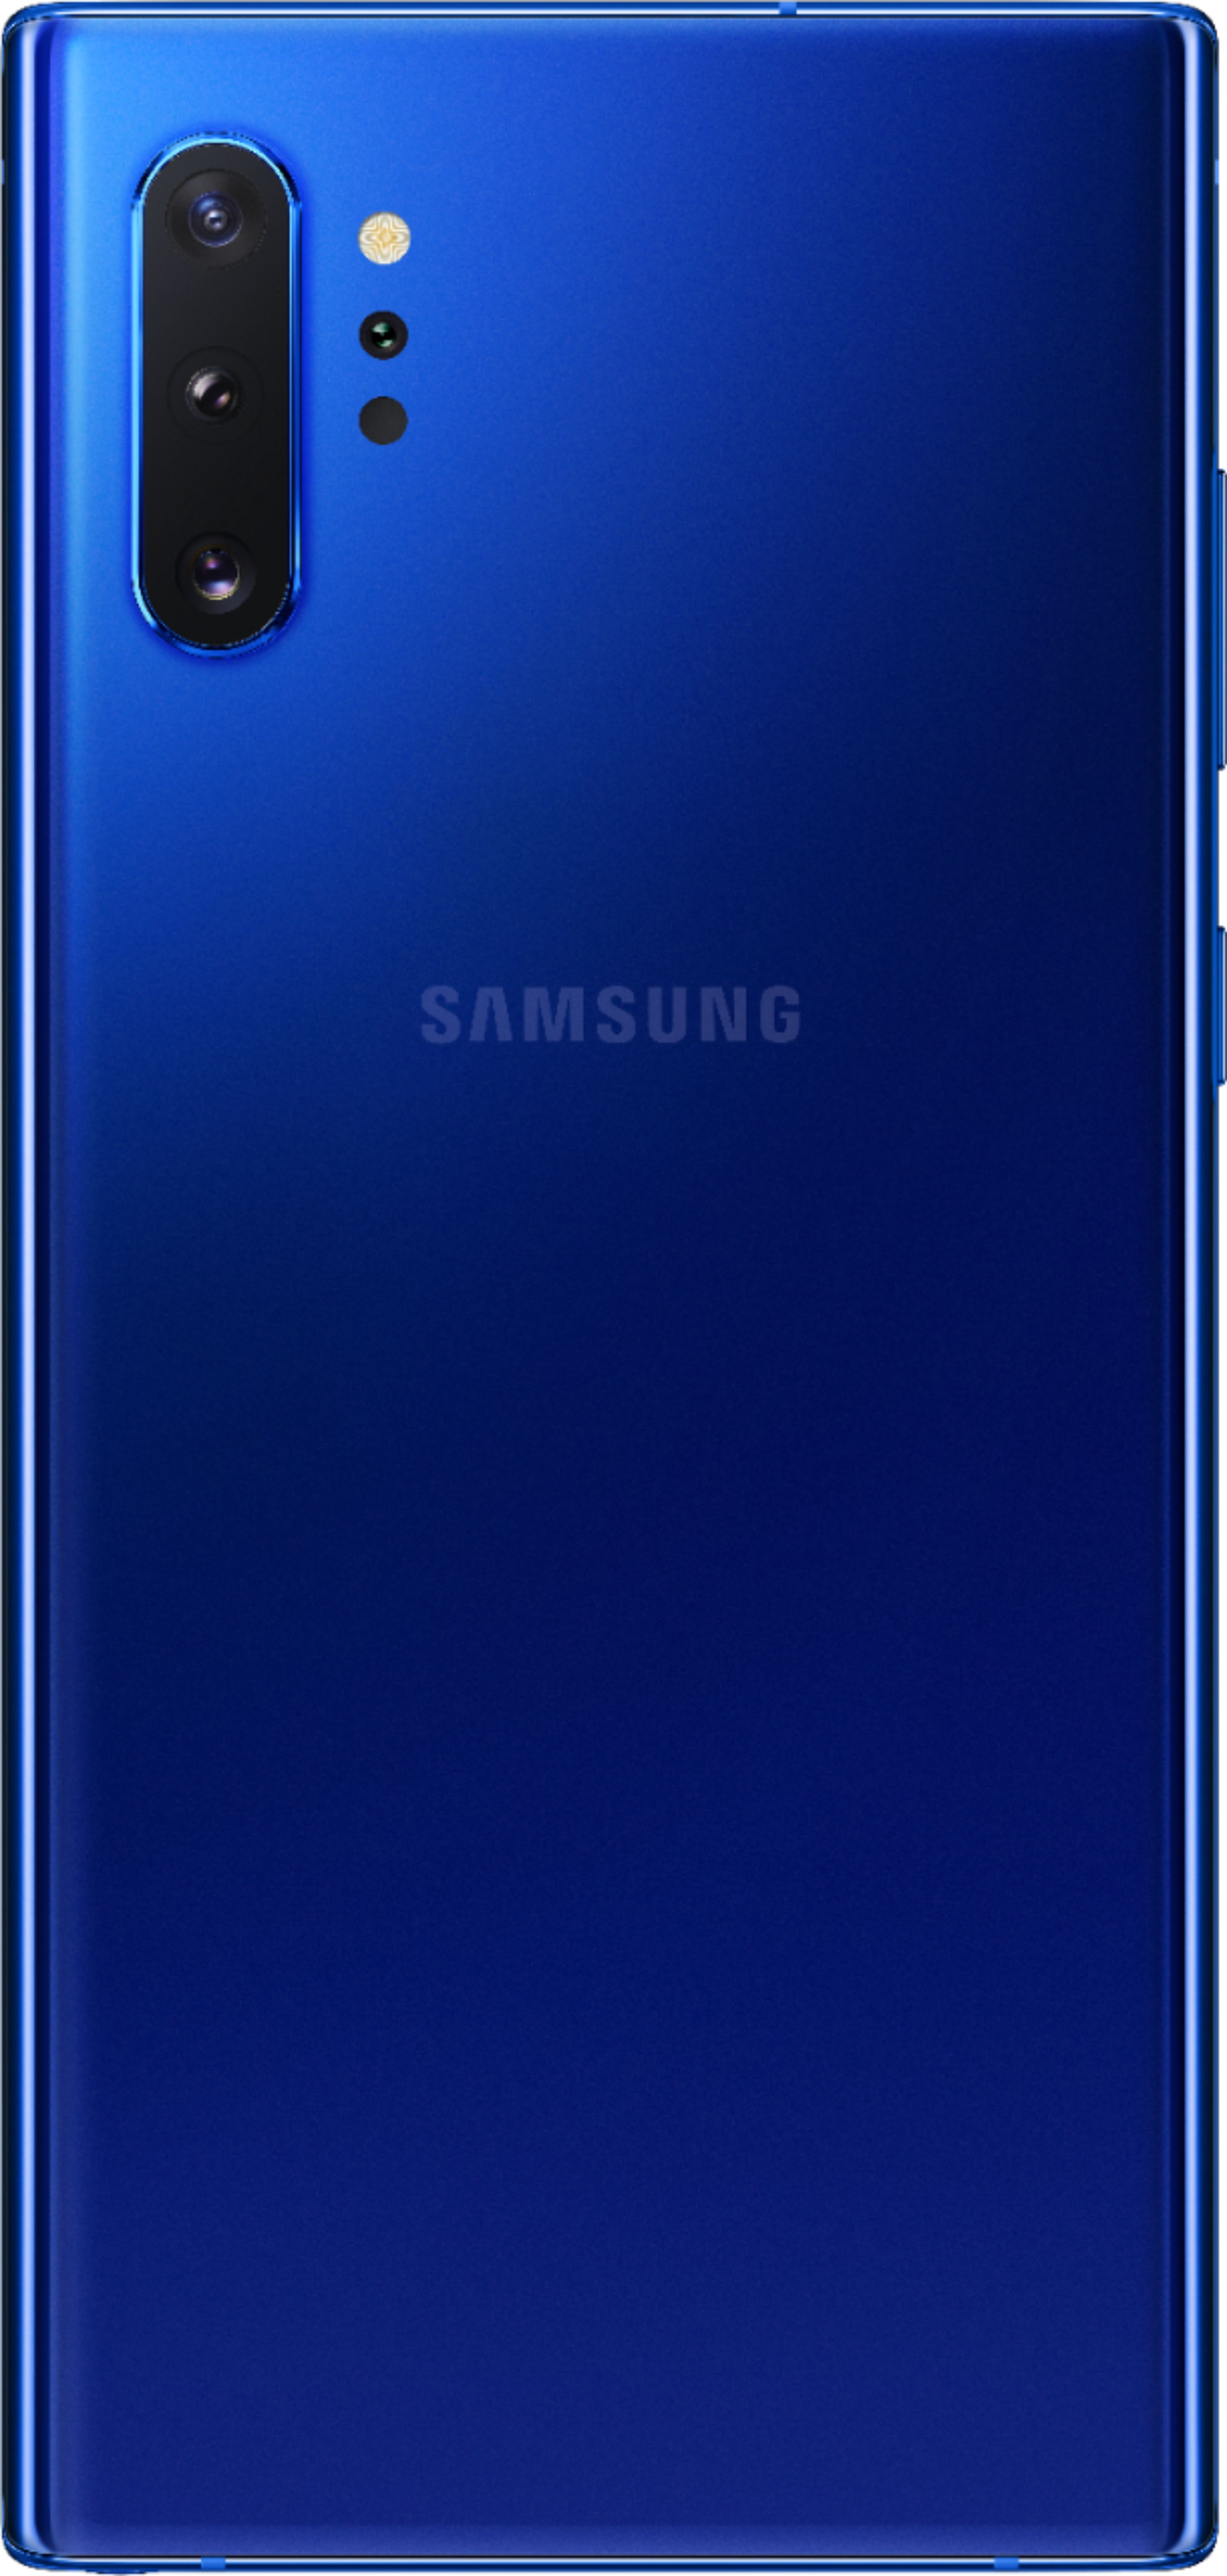 Samsung Galaxy Note10, Samsung